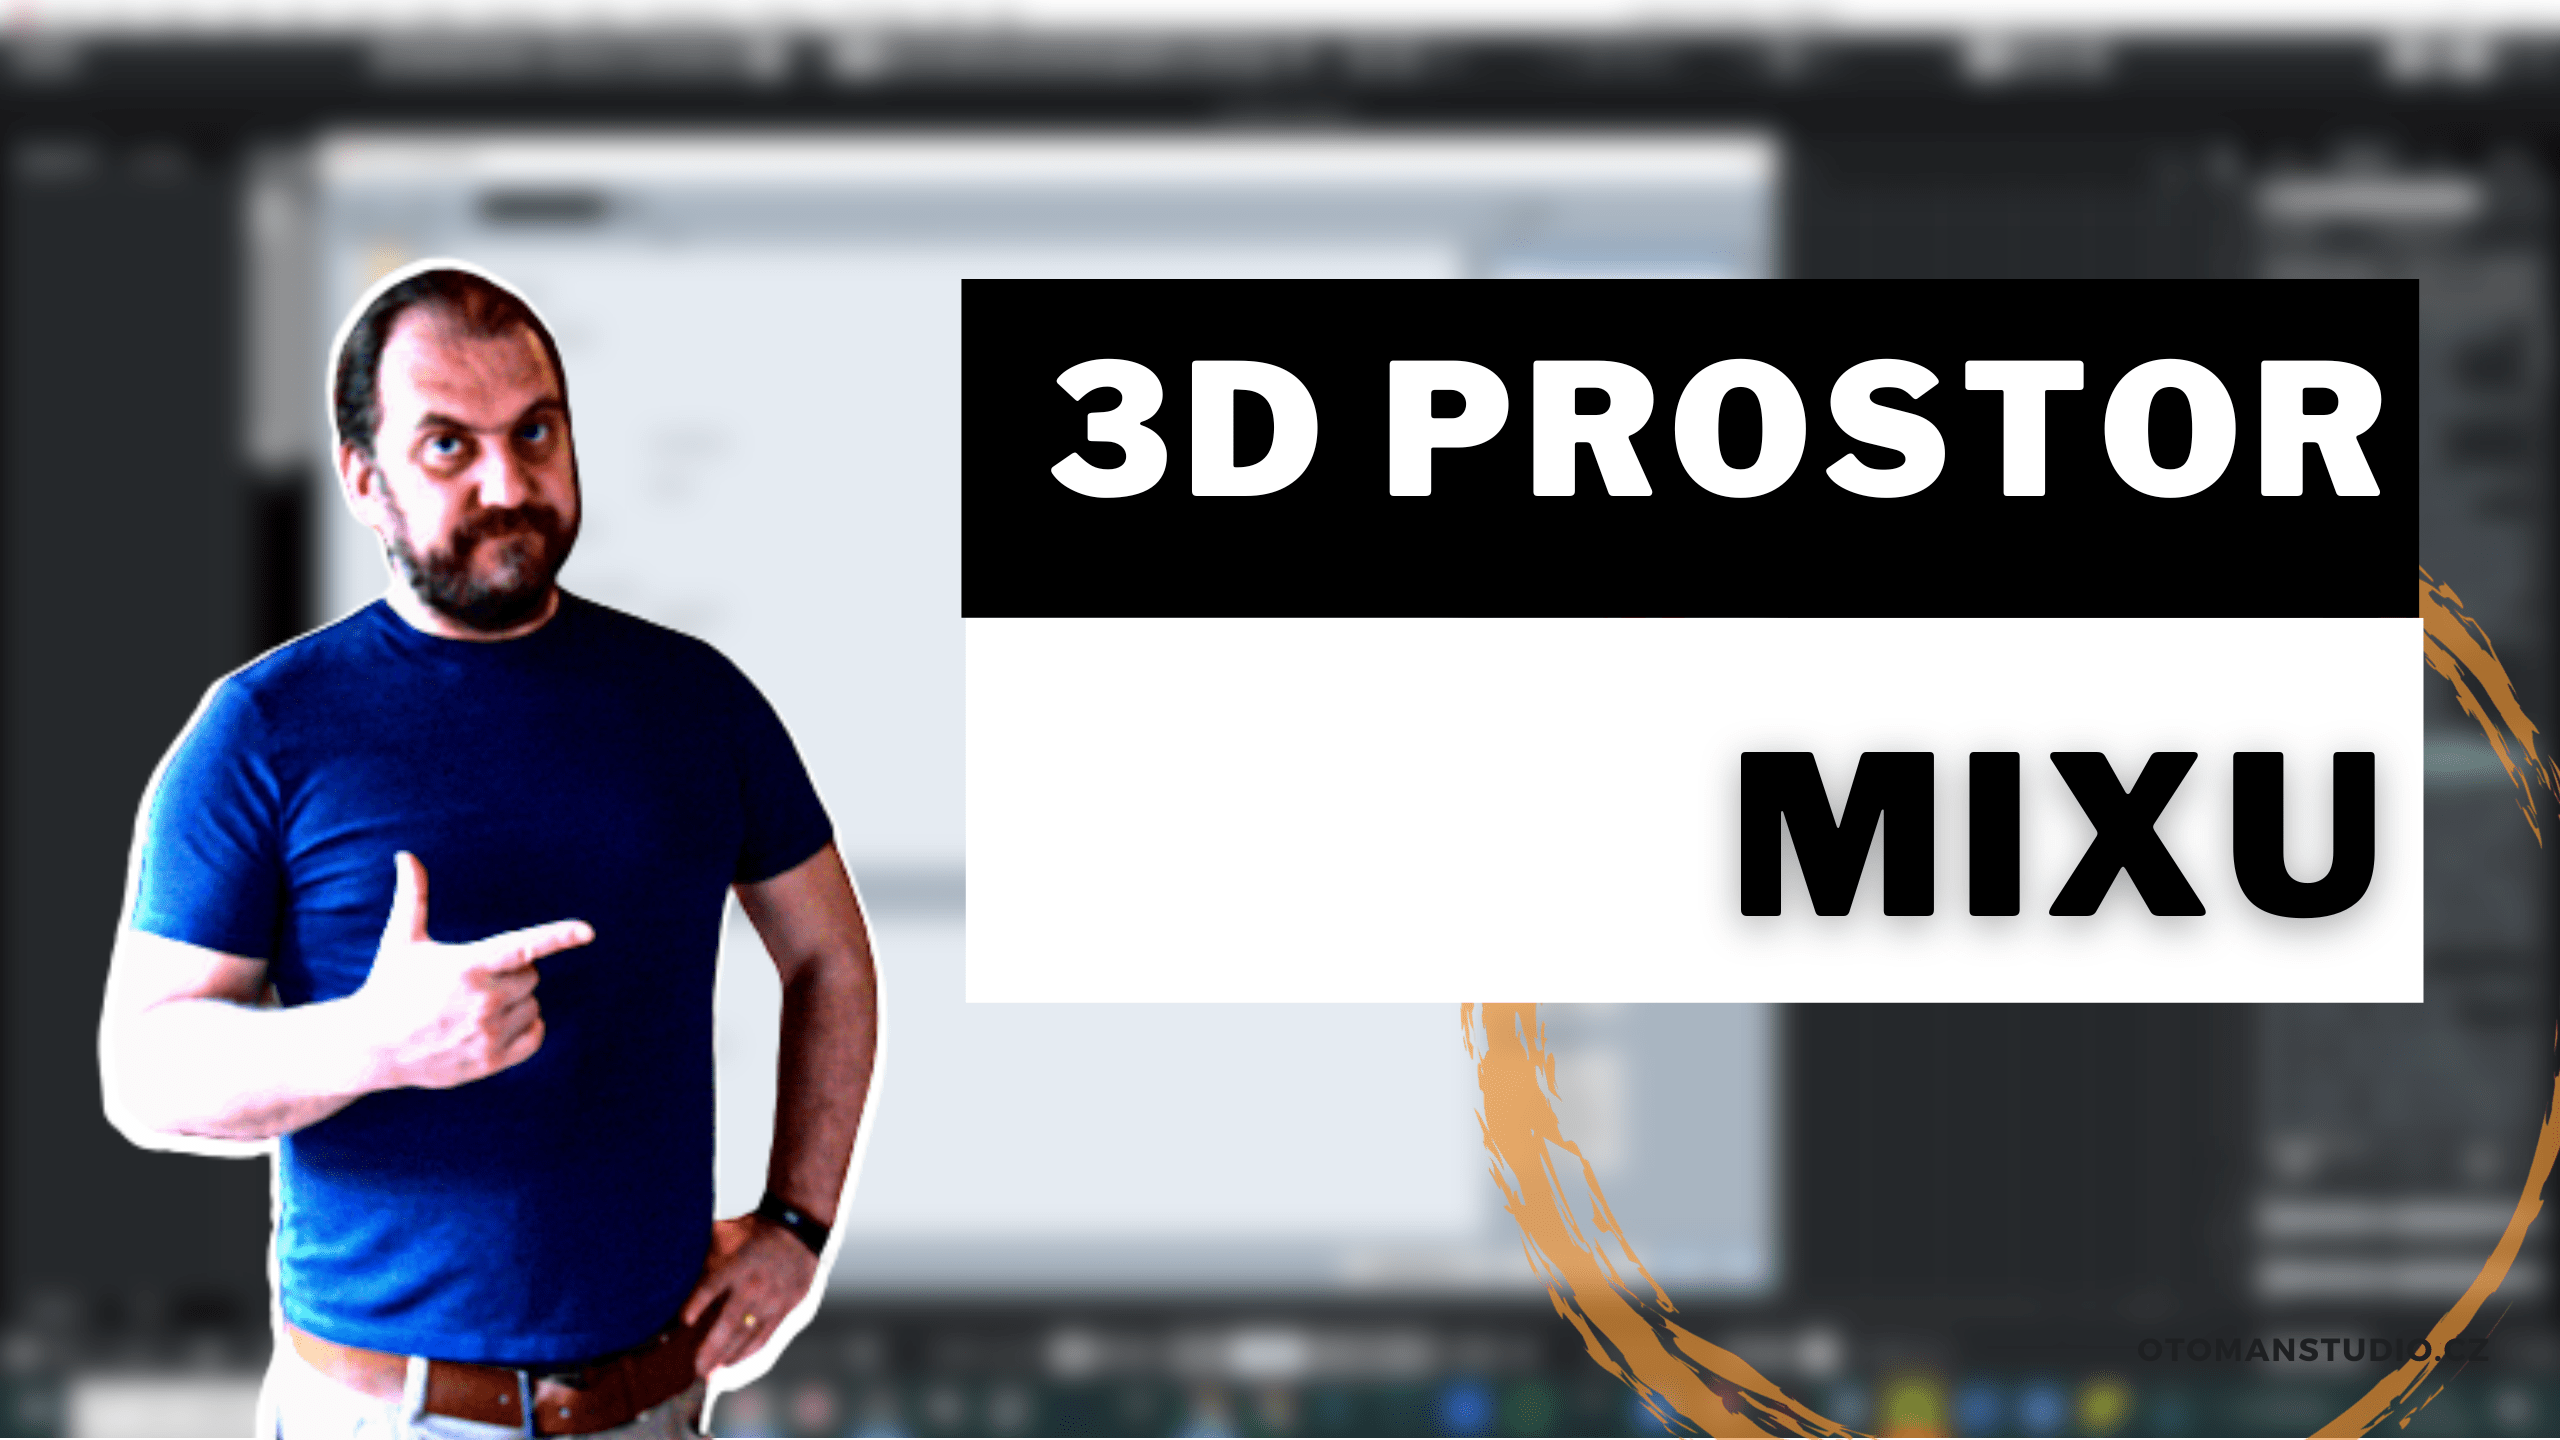 3D Prostor Mixu